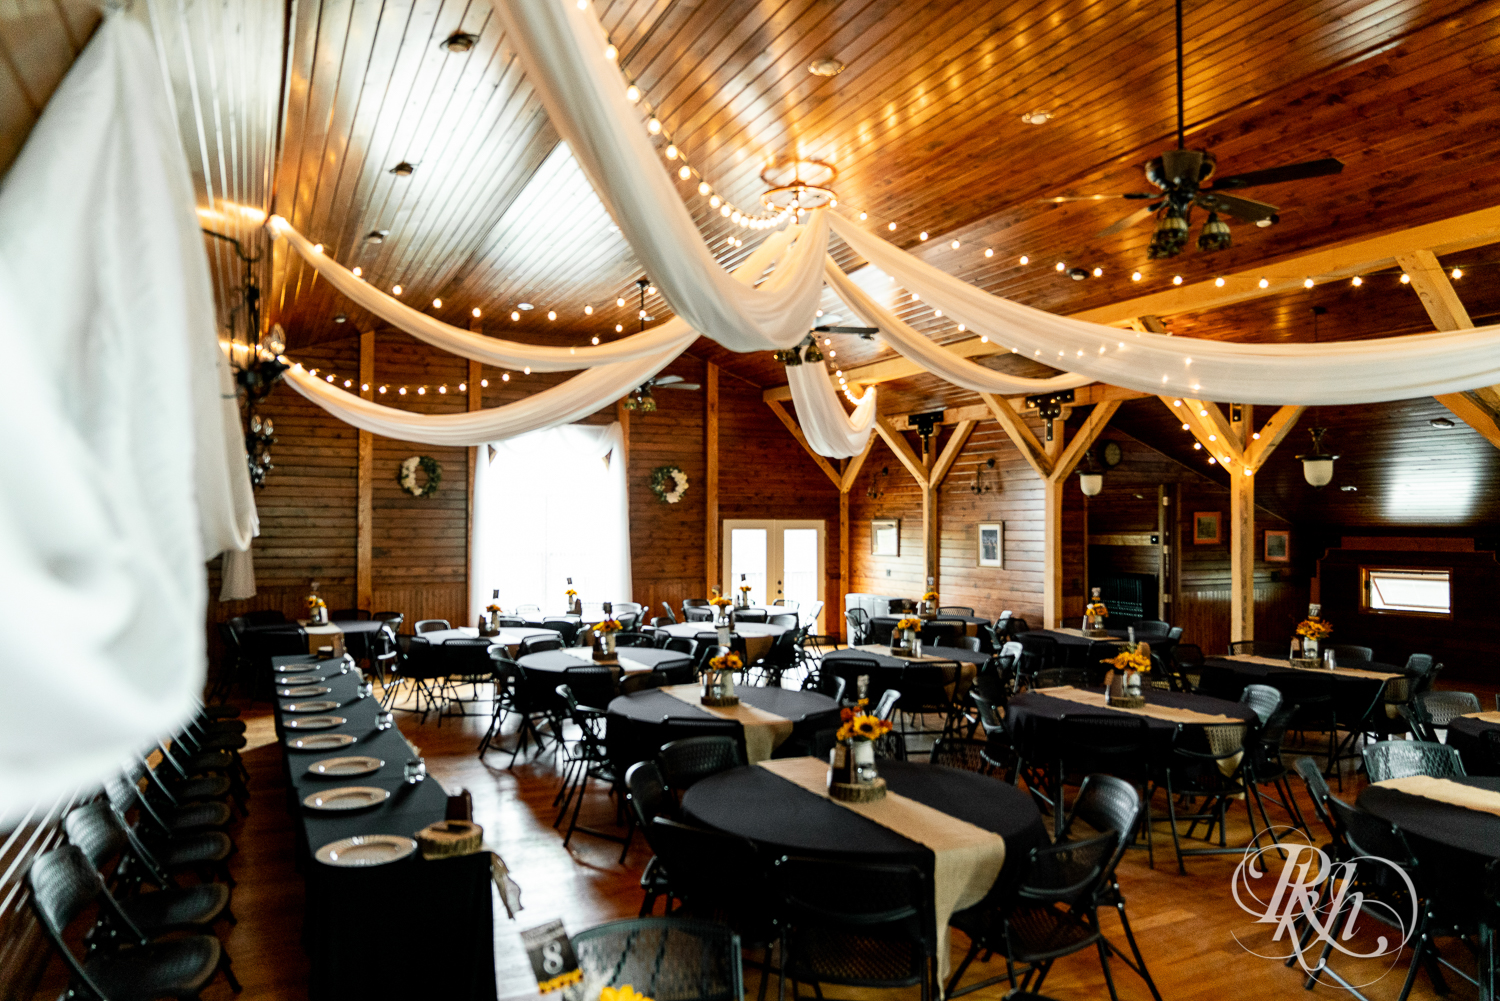 Barn wedding reception setup at Barn at Crocker's Creek in Faribault, Minnesota.